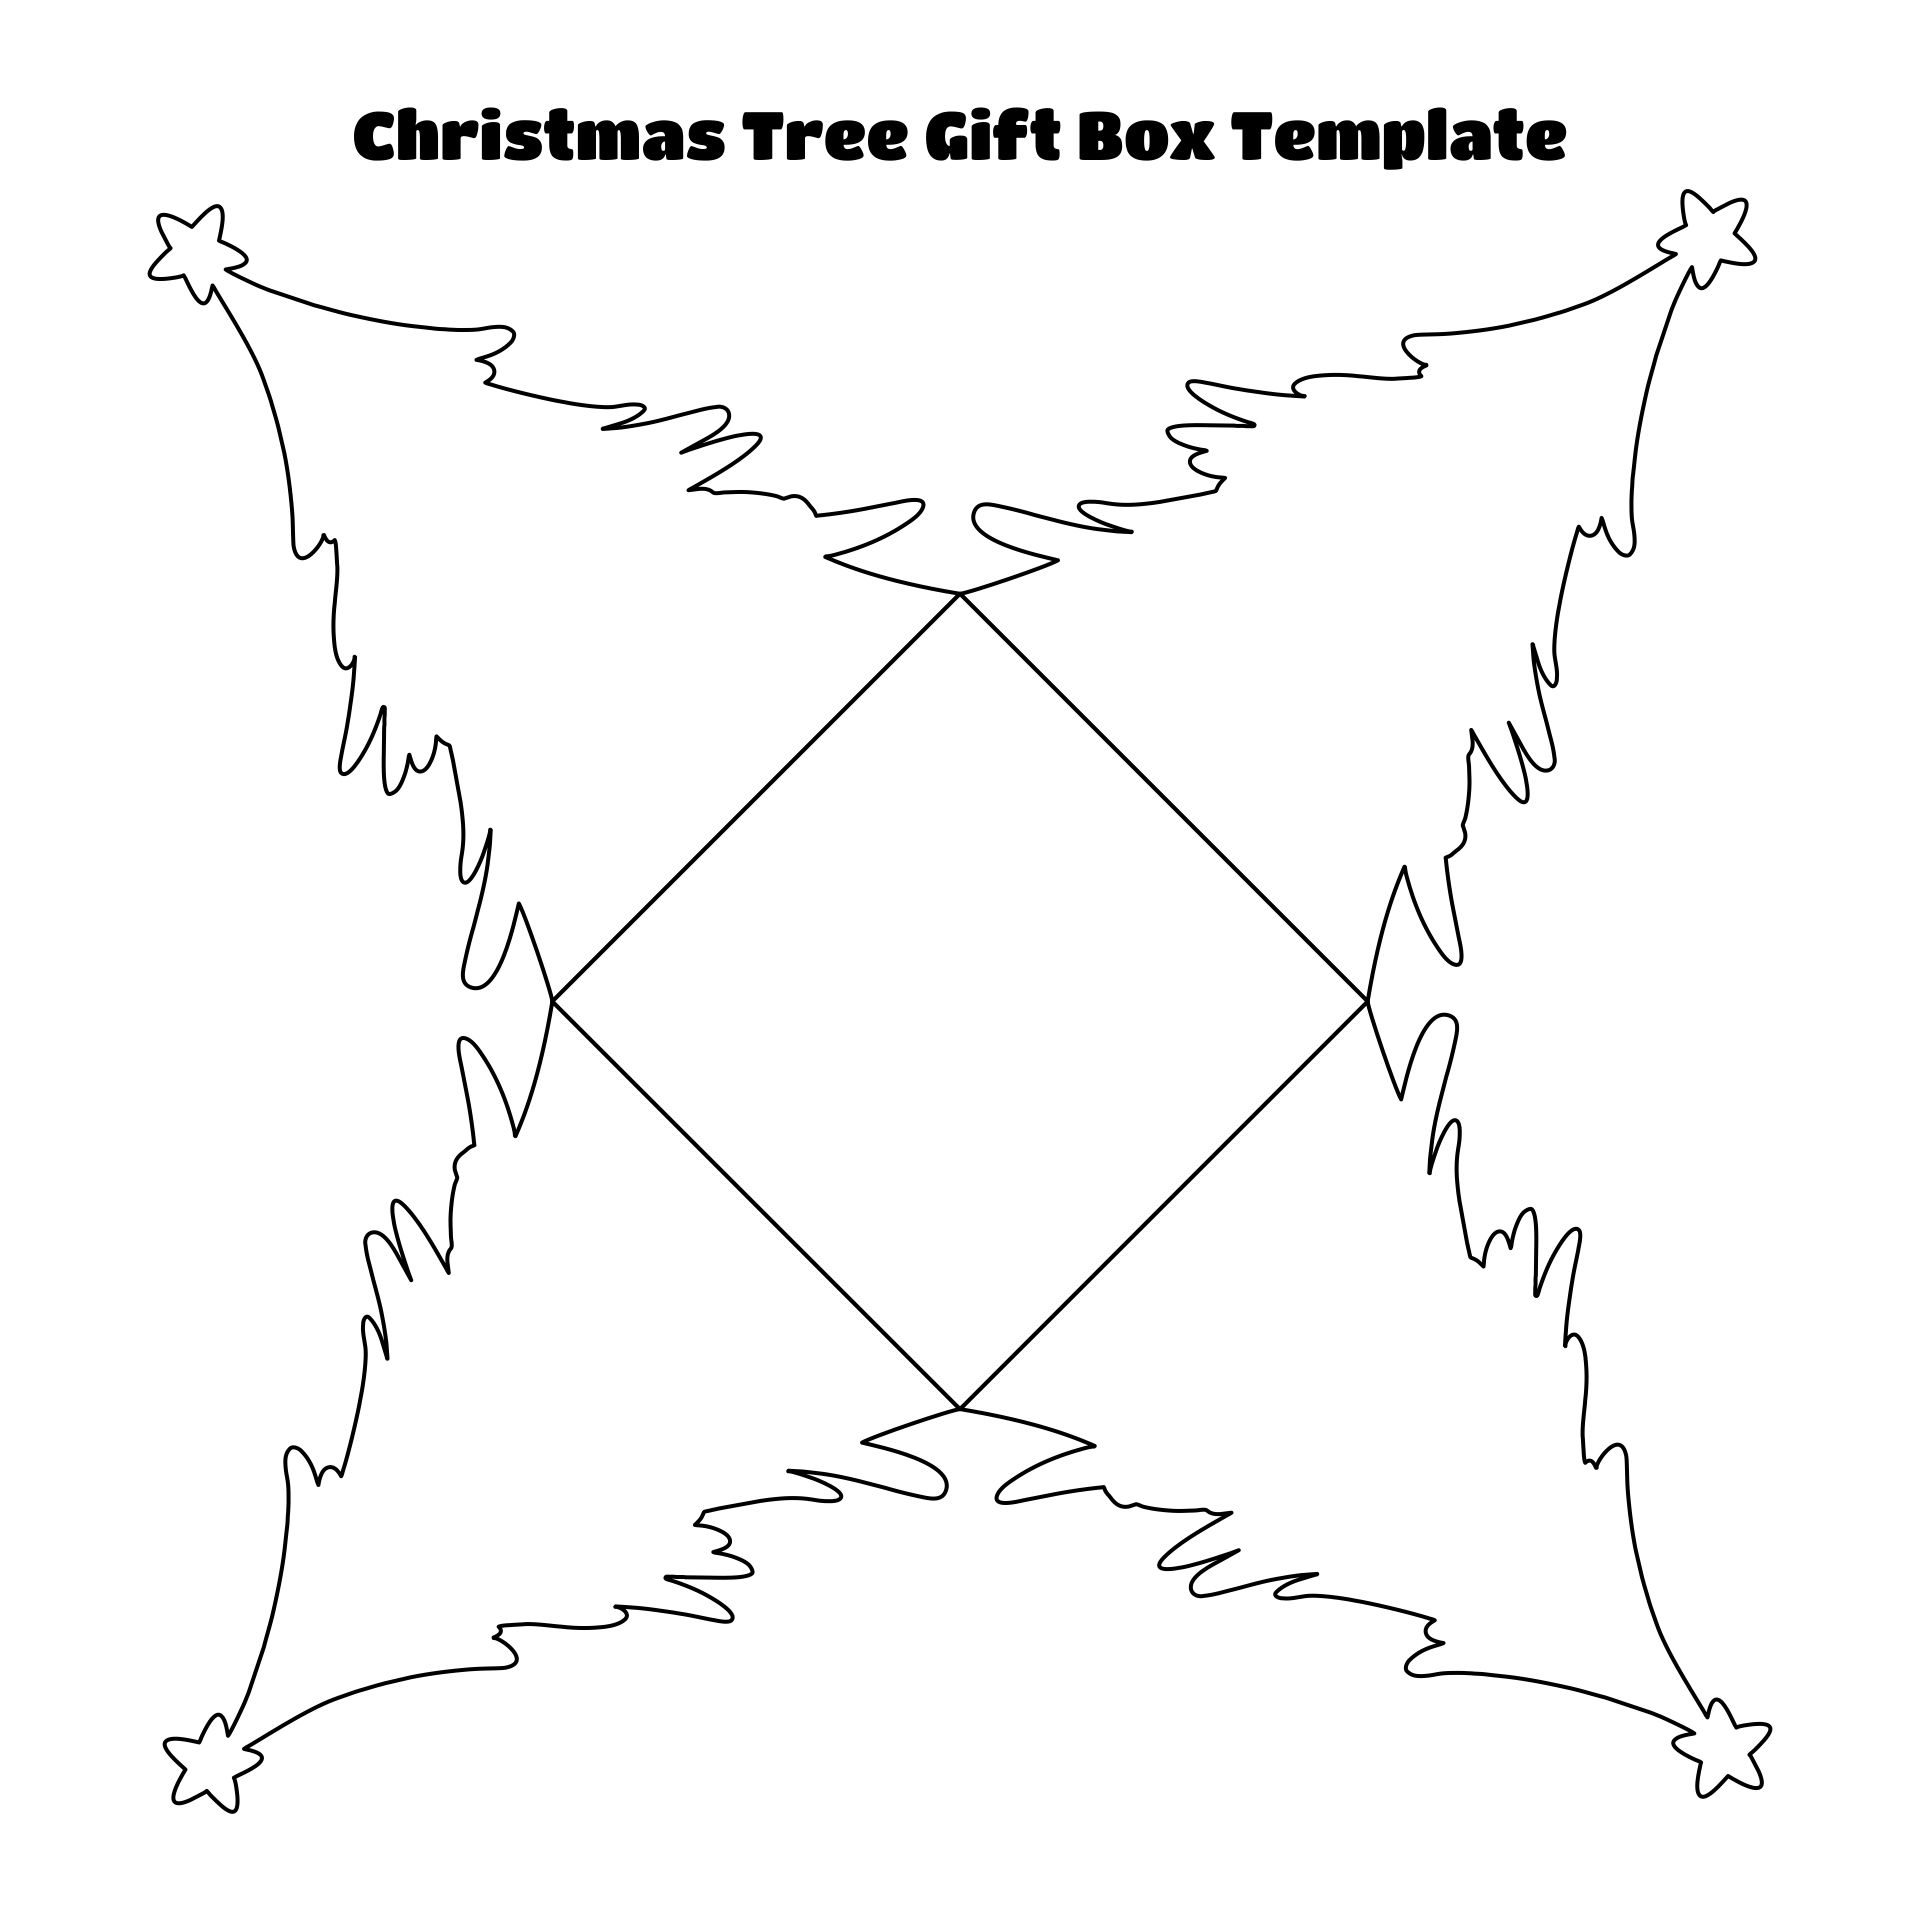 Printable Christmas Tree Gift Box Template